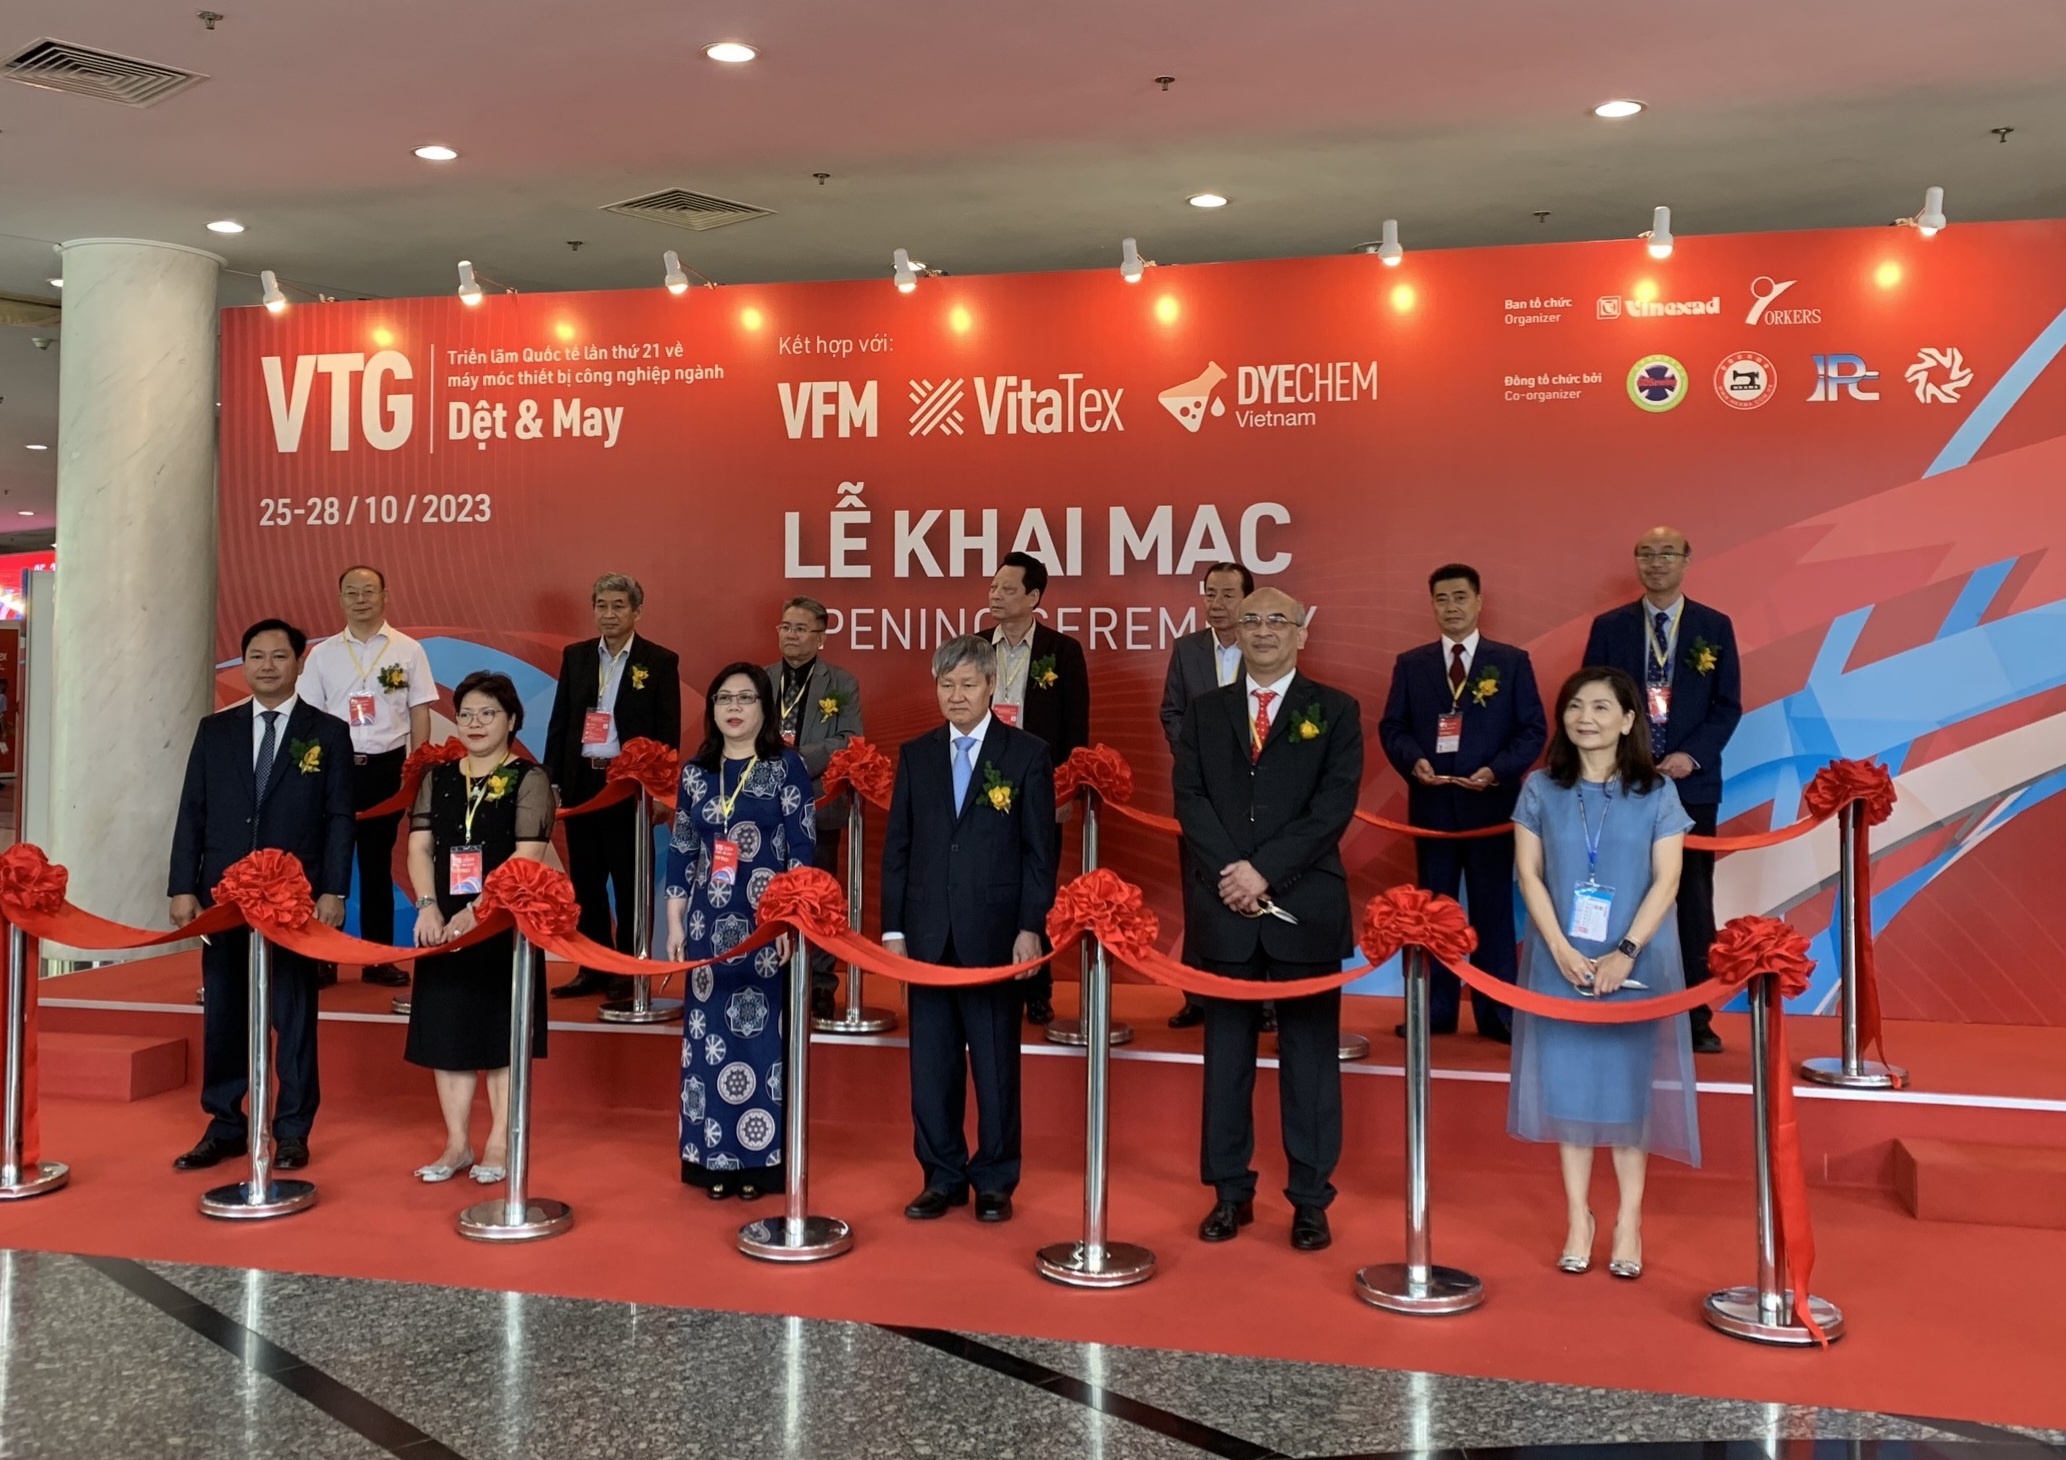 VTG 2023 nâng tầm ngành dệt may Việt Nam